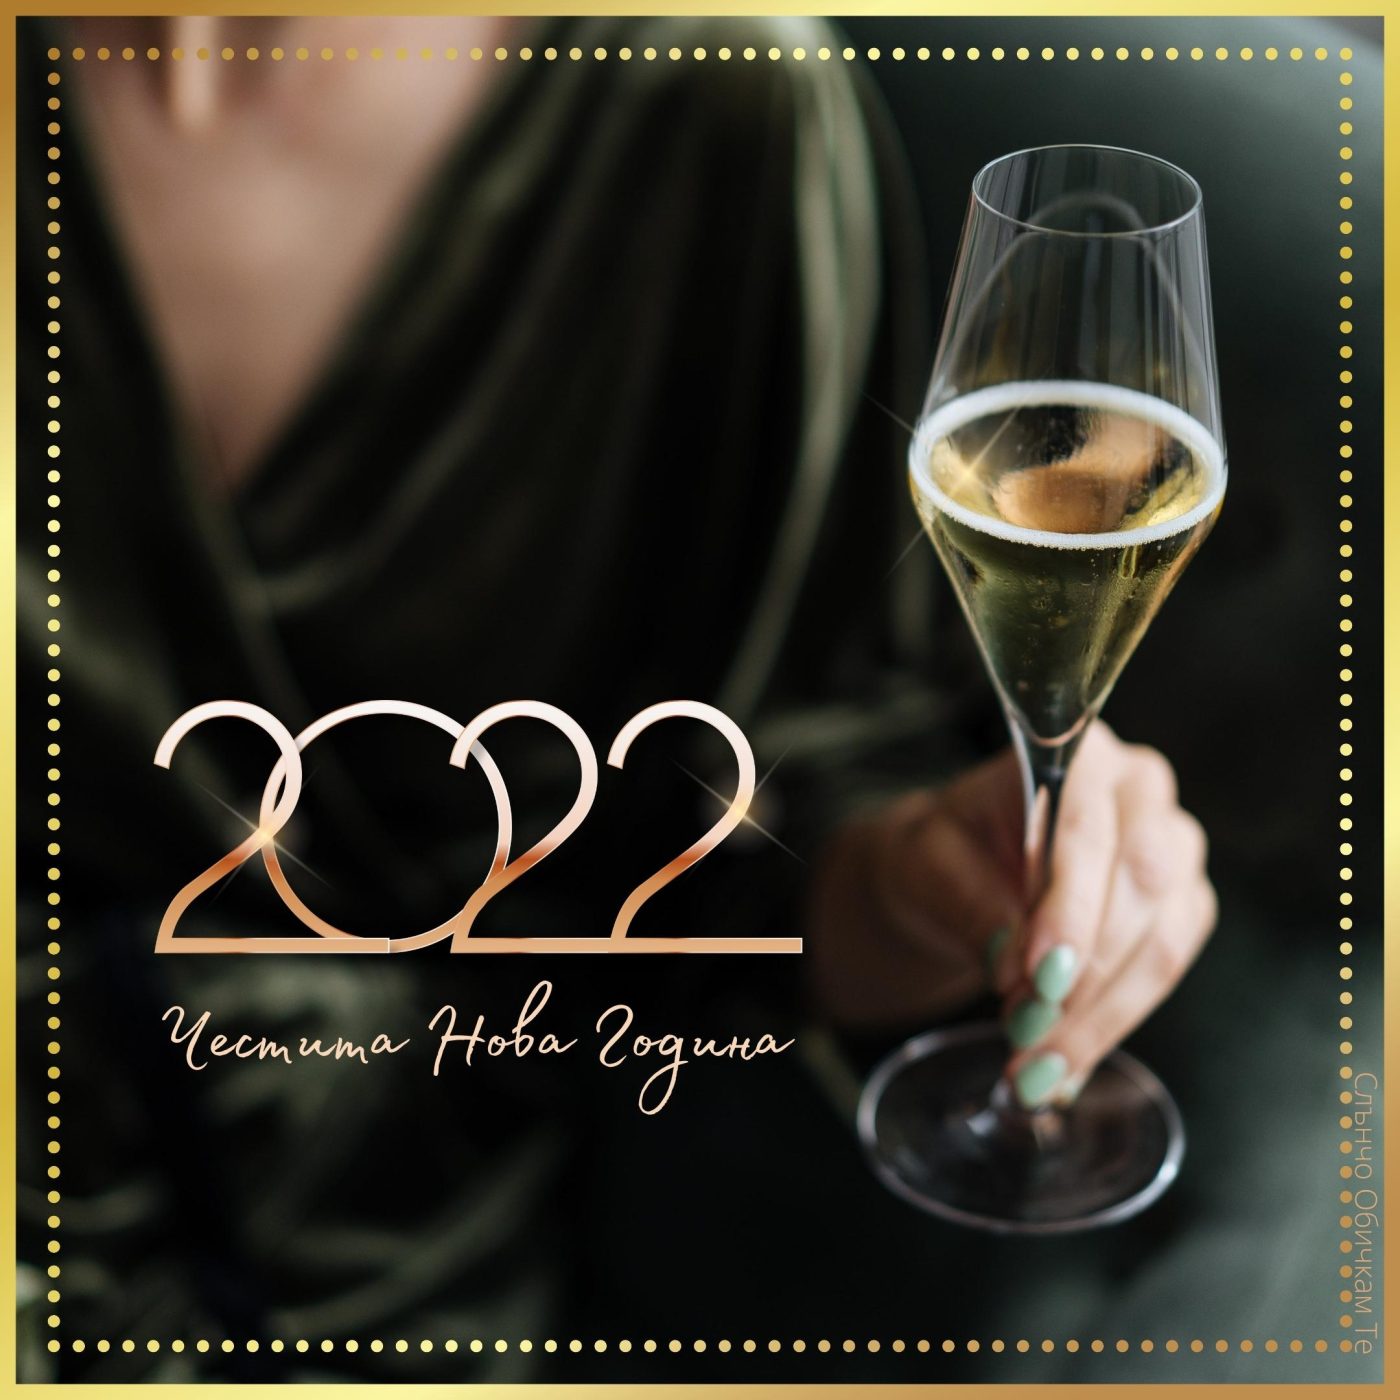 Честита Нова година, 2022, Наздраве, картички за нова година, пожелания за нова година